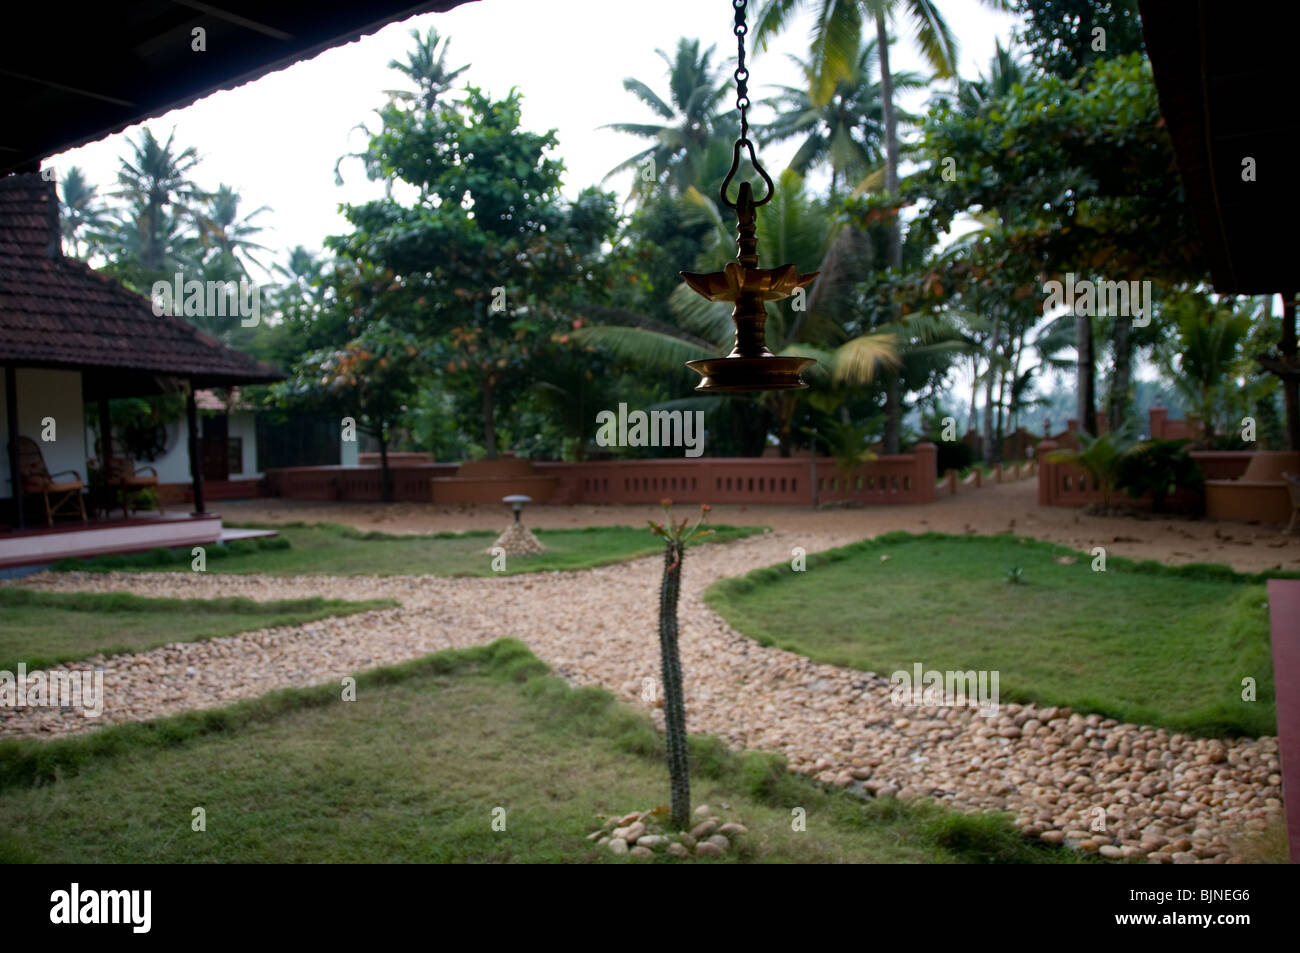 Exterior De Un Homestay Resort Allepey Kerala India Bjneg6 